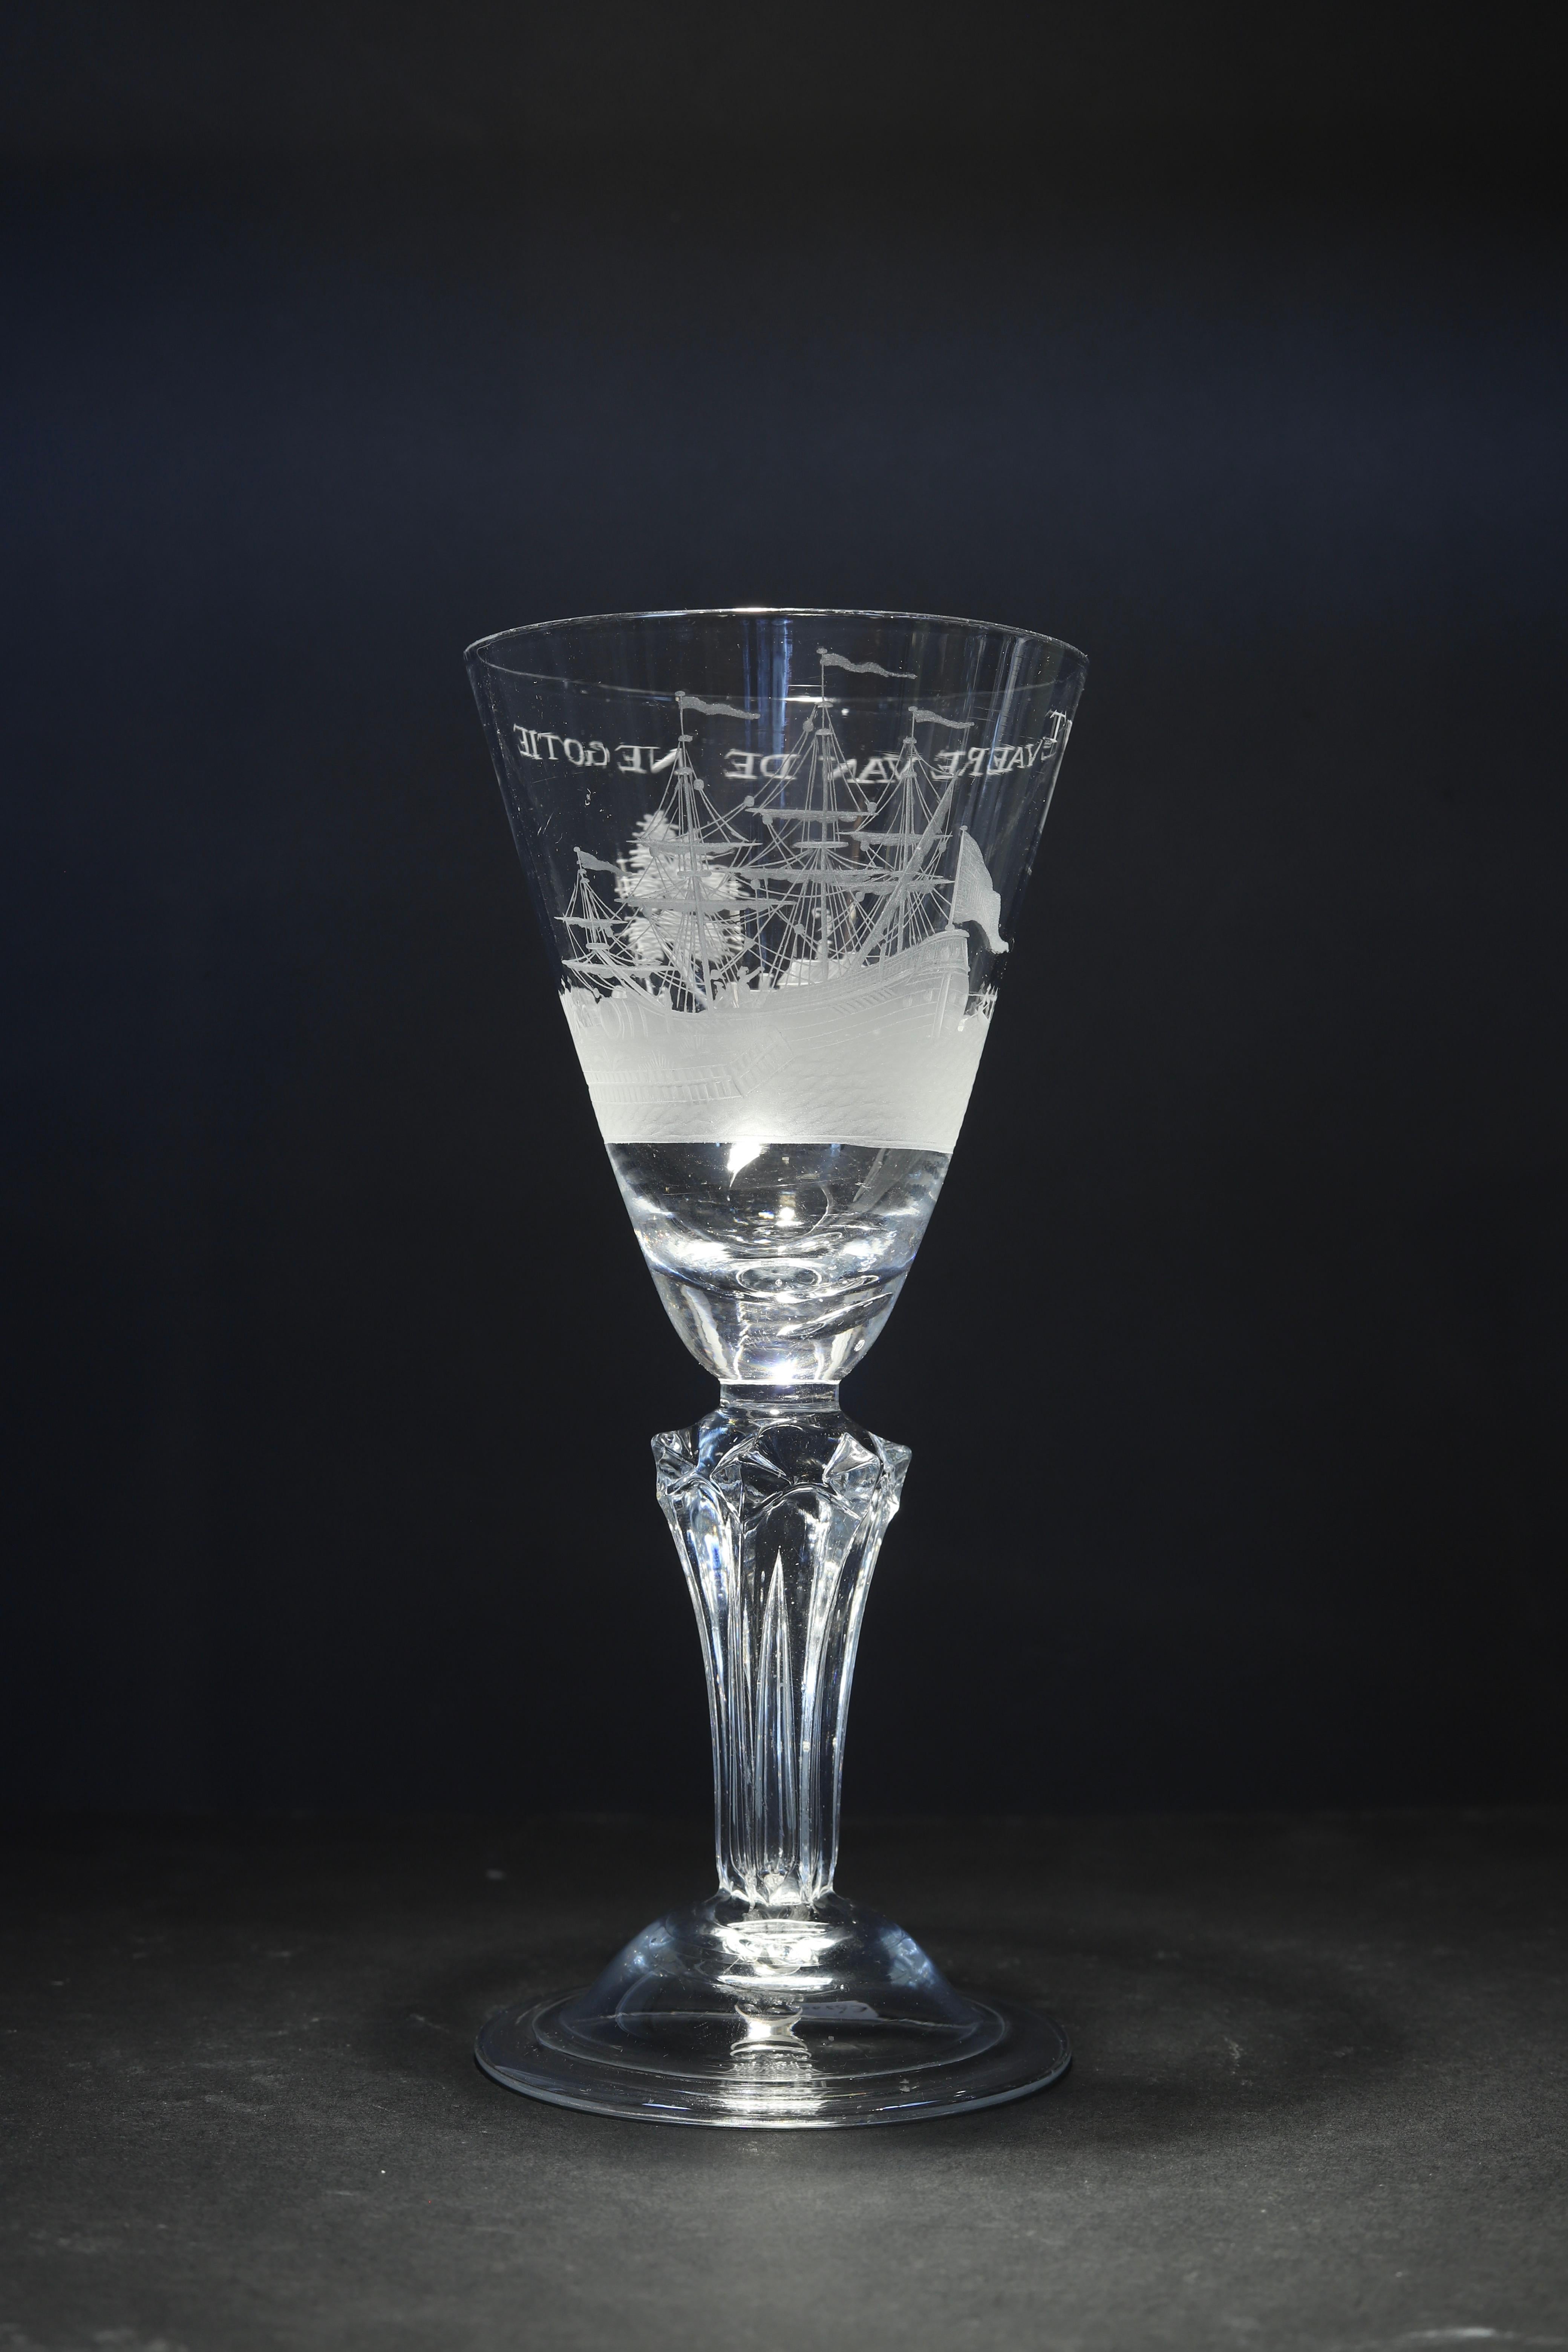 Die Niederlande oder England
Gravur: Niederländisch
CIRCA 1730 - 1740

Ein außergewöhnliches, feines niederländisches Weinglas mit graviertem Stiel, mit einer spitzen, runden Trichterschale mit einem massiven Sockel, der eine Träne einschließt,